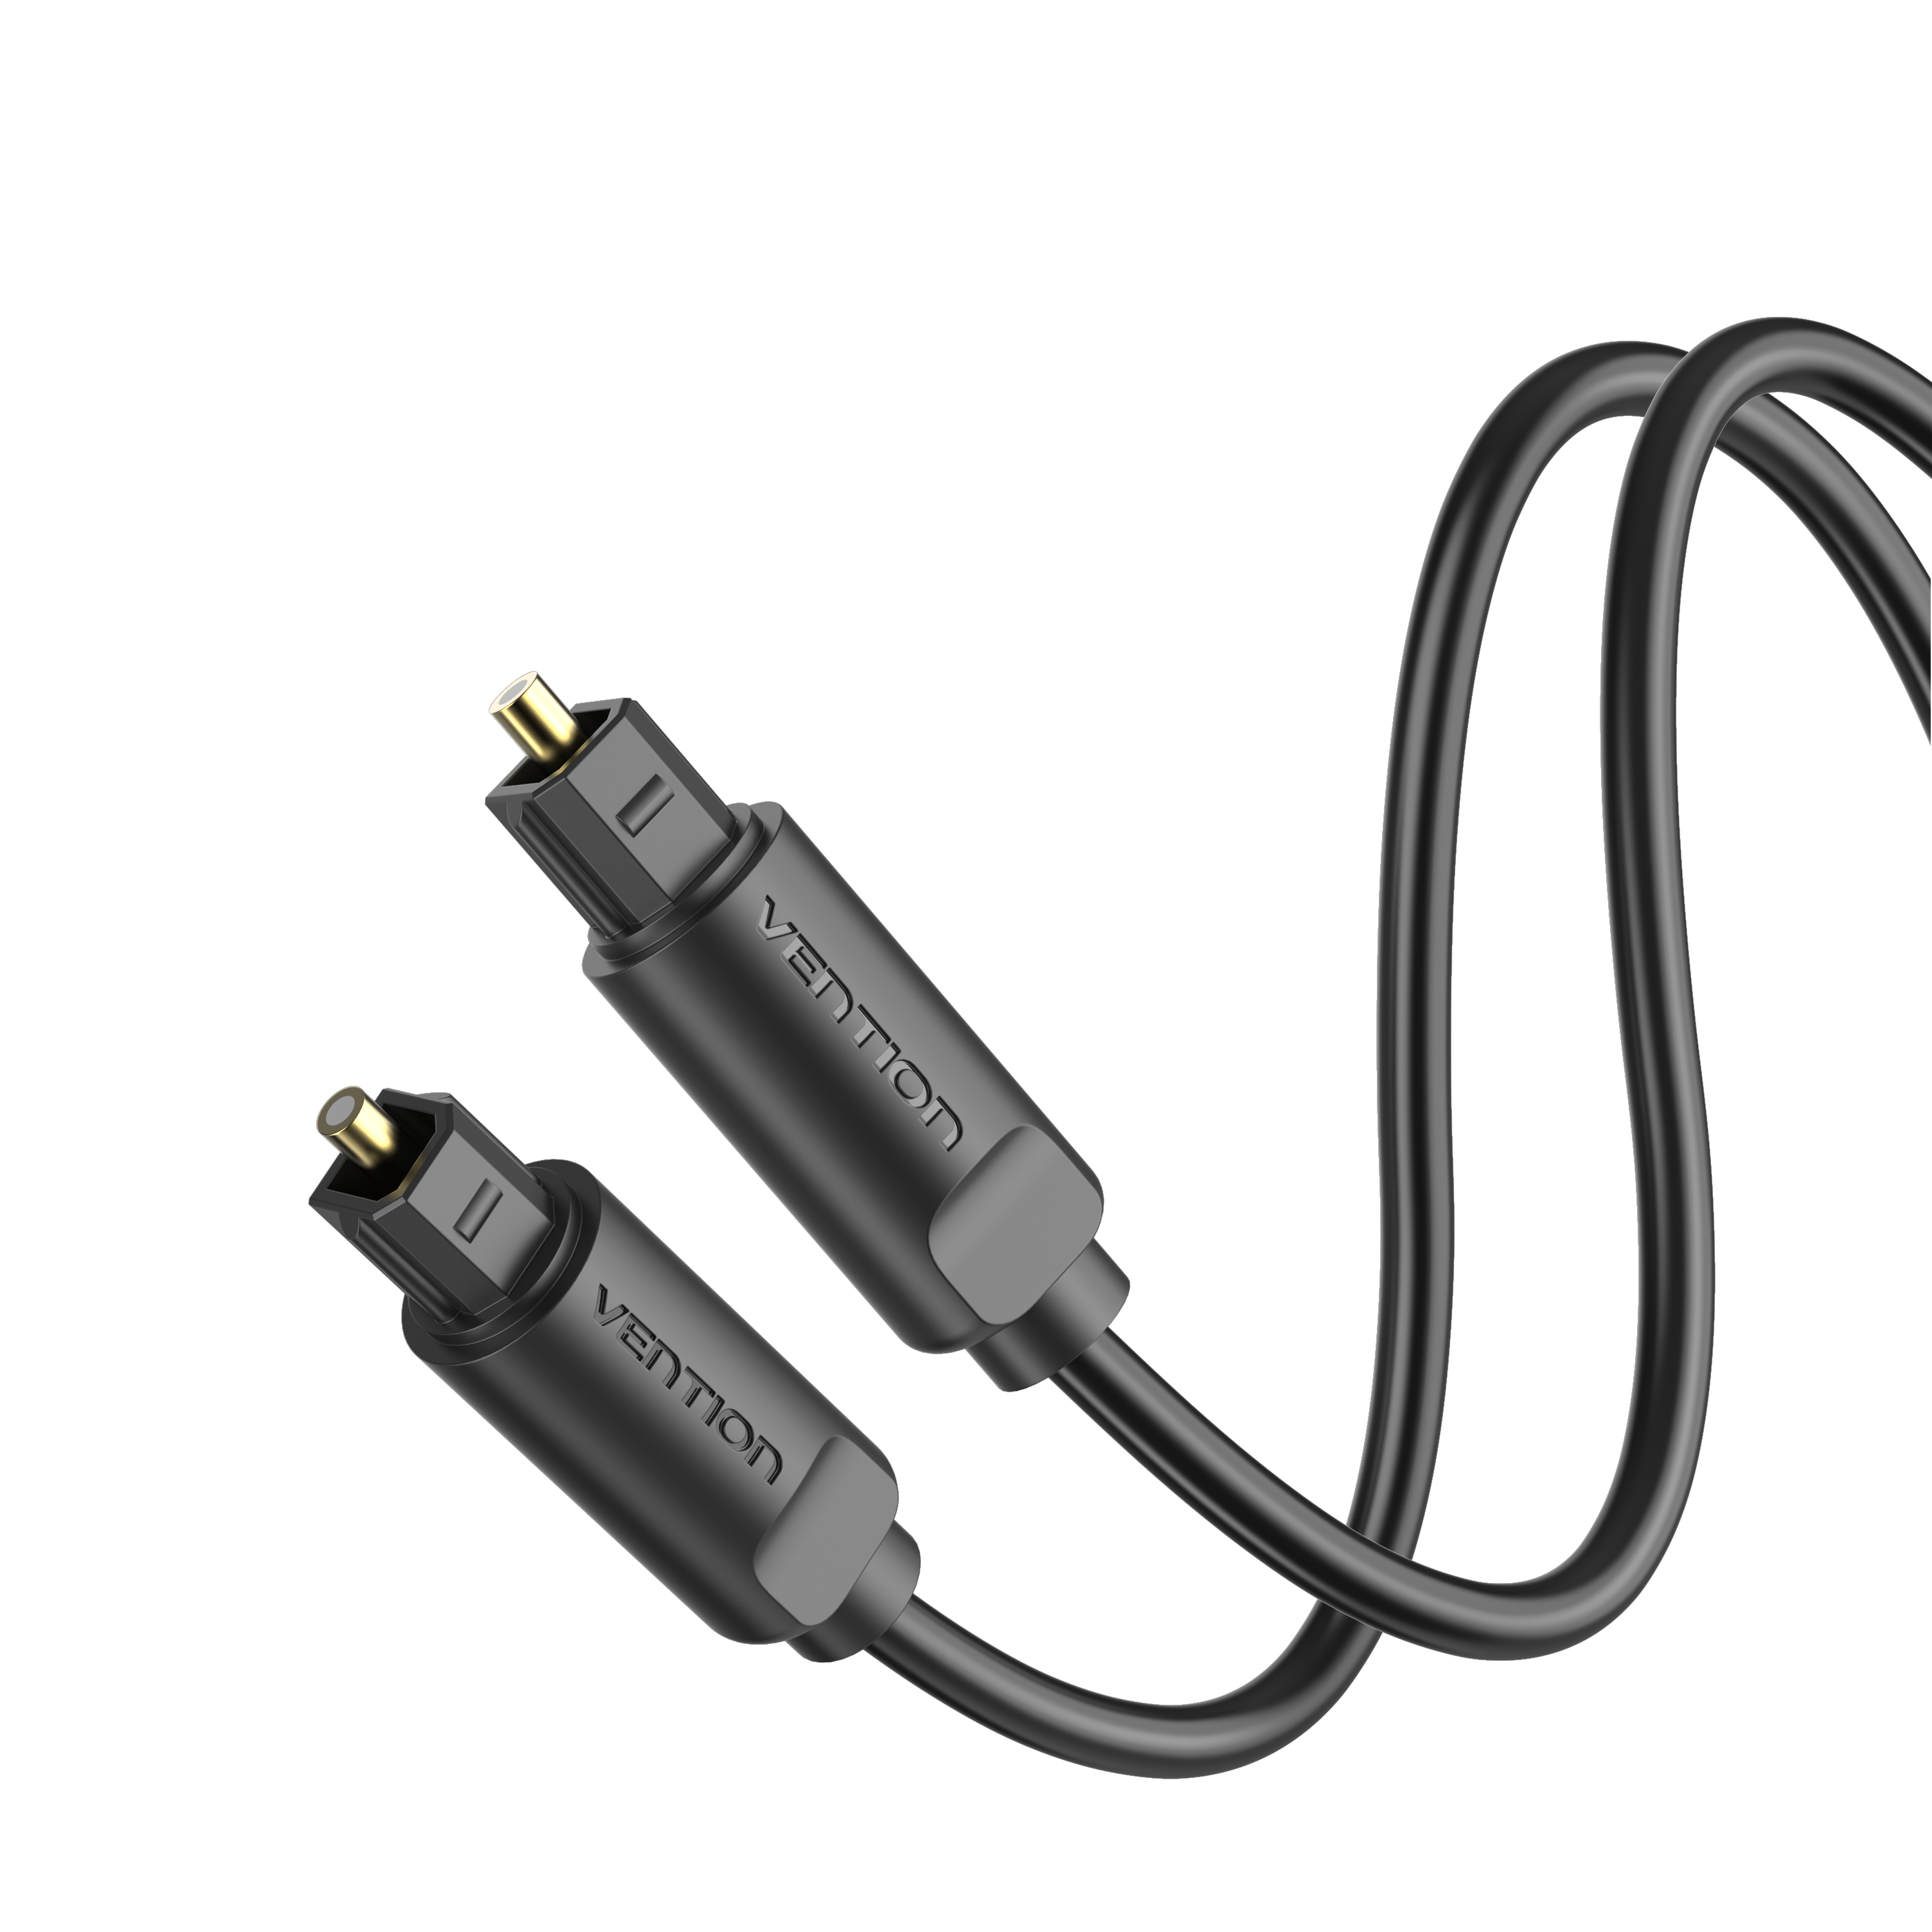 VCOM 2m CV905 Cable Óptico de Audio – Cable de Audio Optico Toslink,  Conector Metalico, Negro - Yoytec